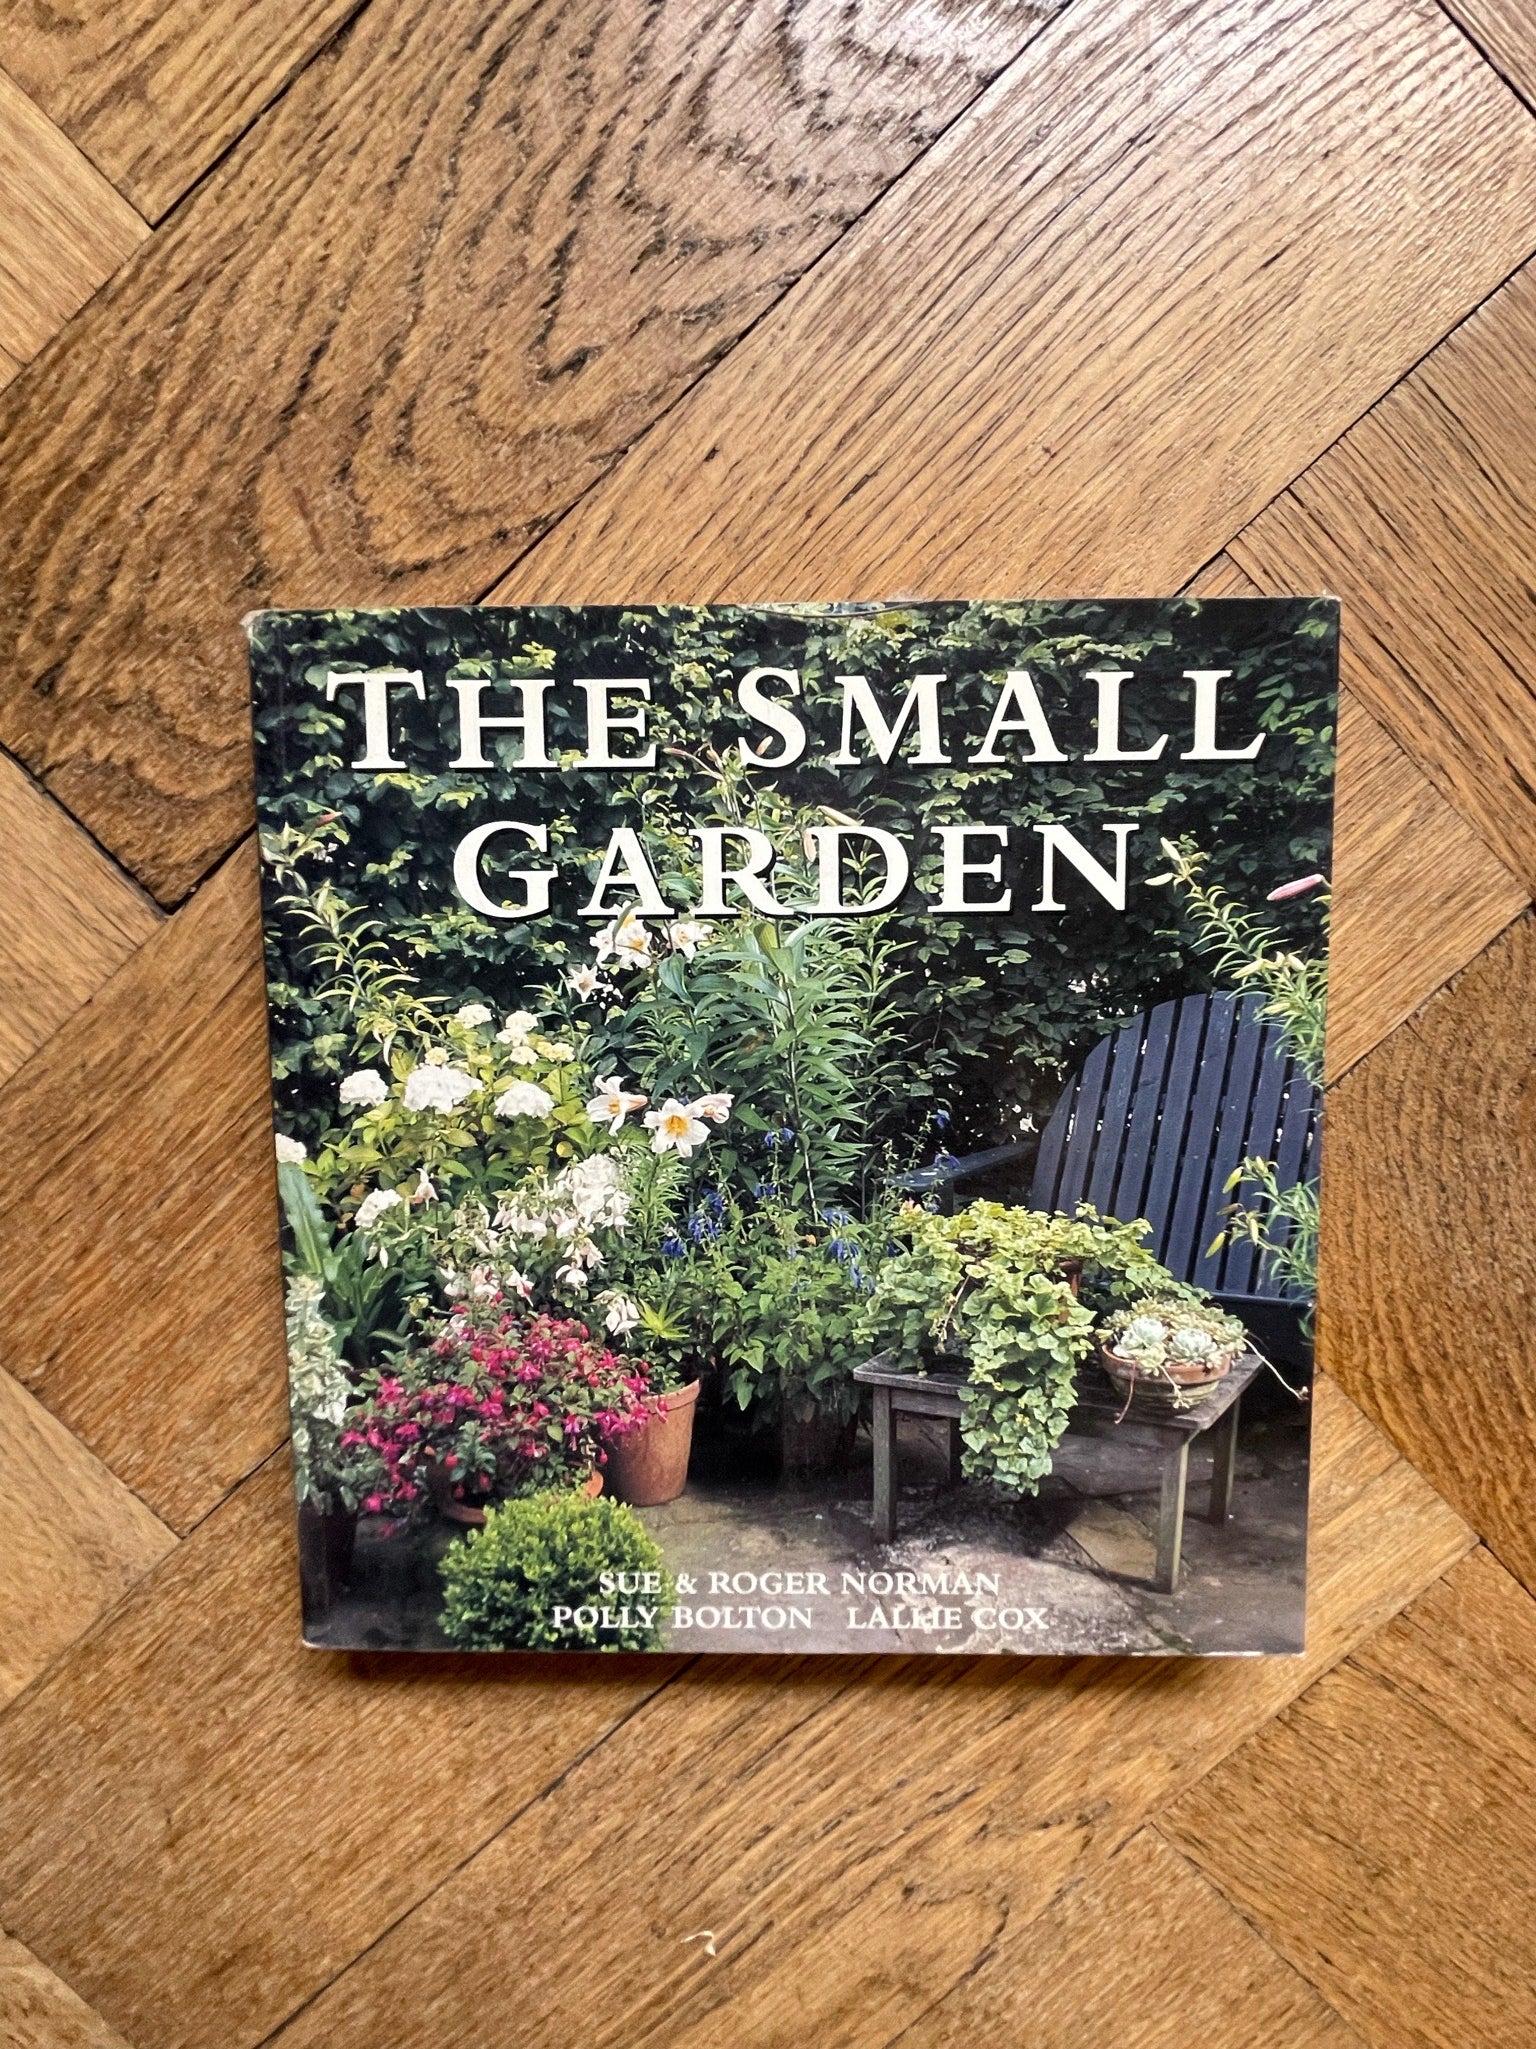 The Small Garden - Sue & Robert Norman